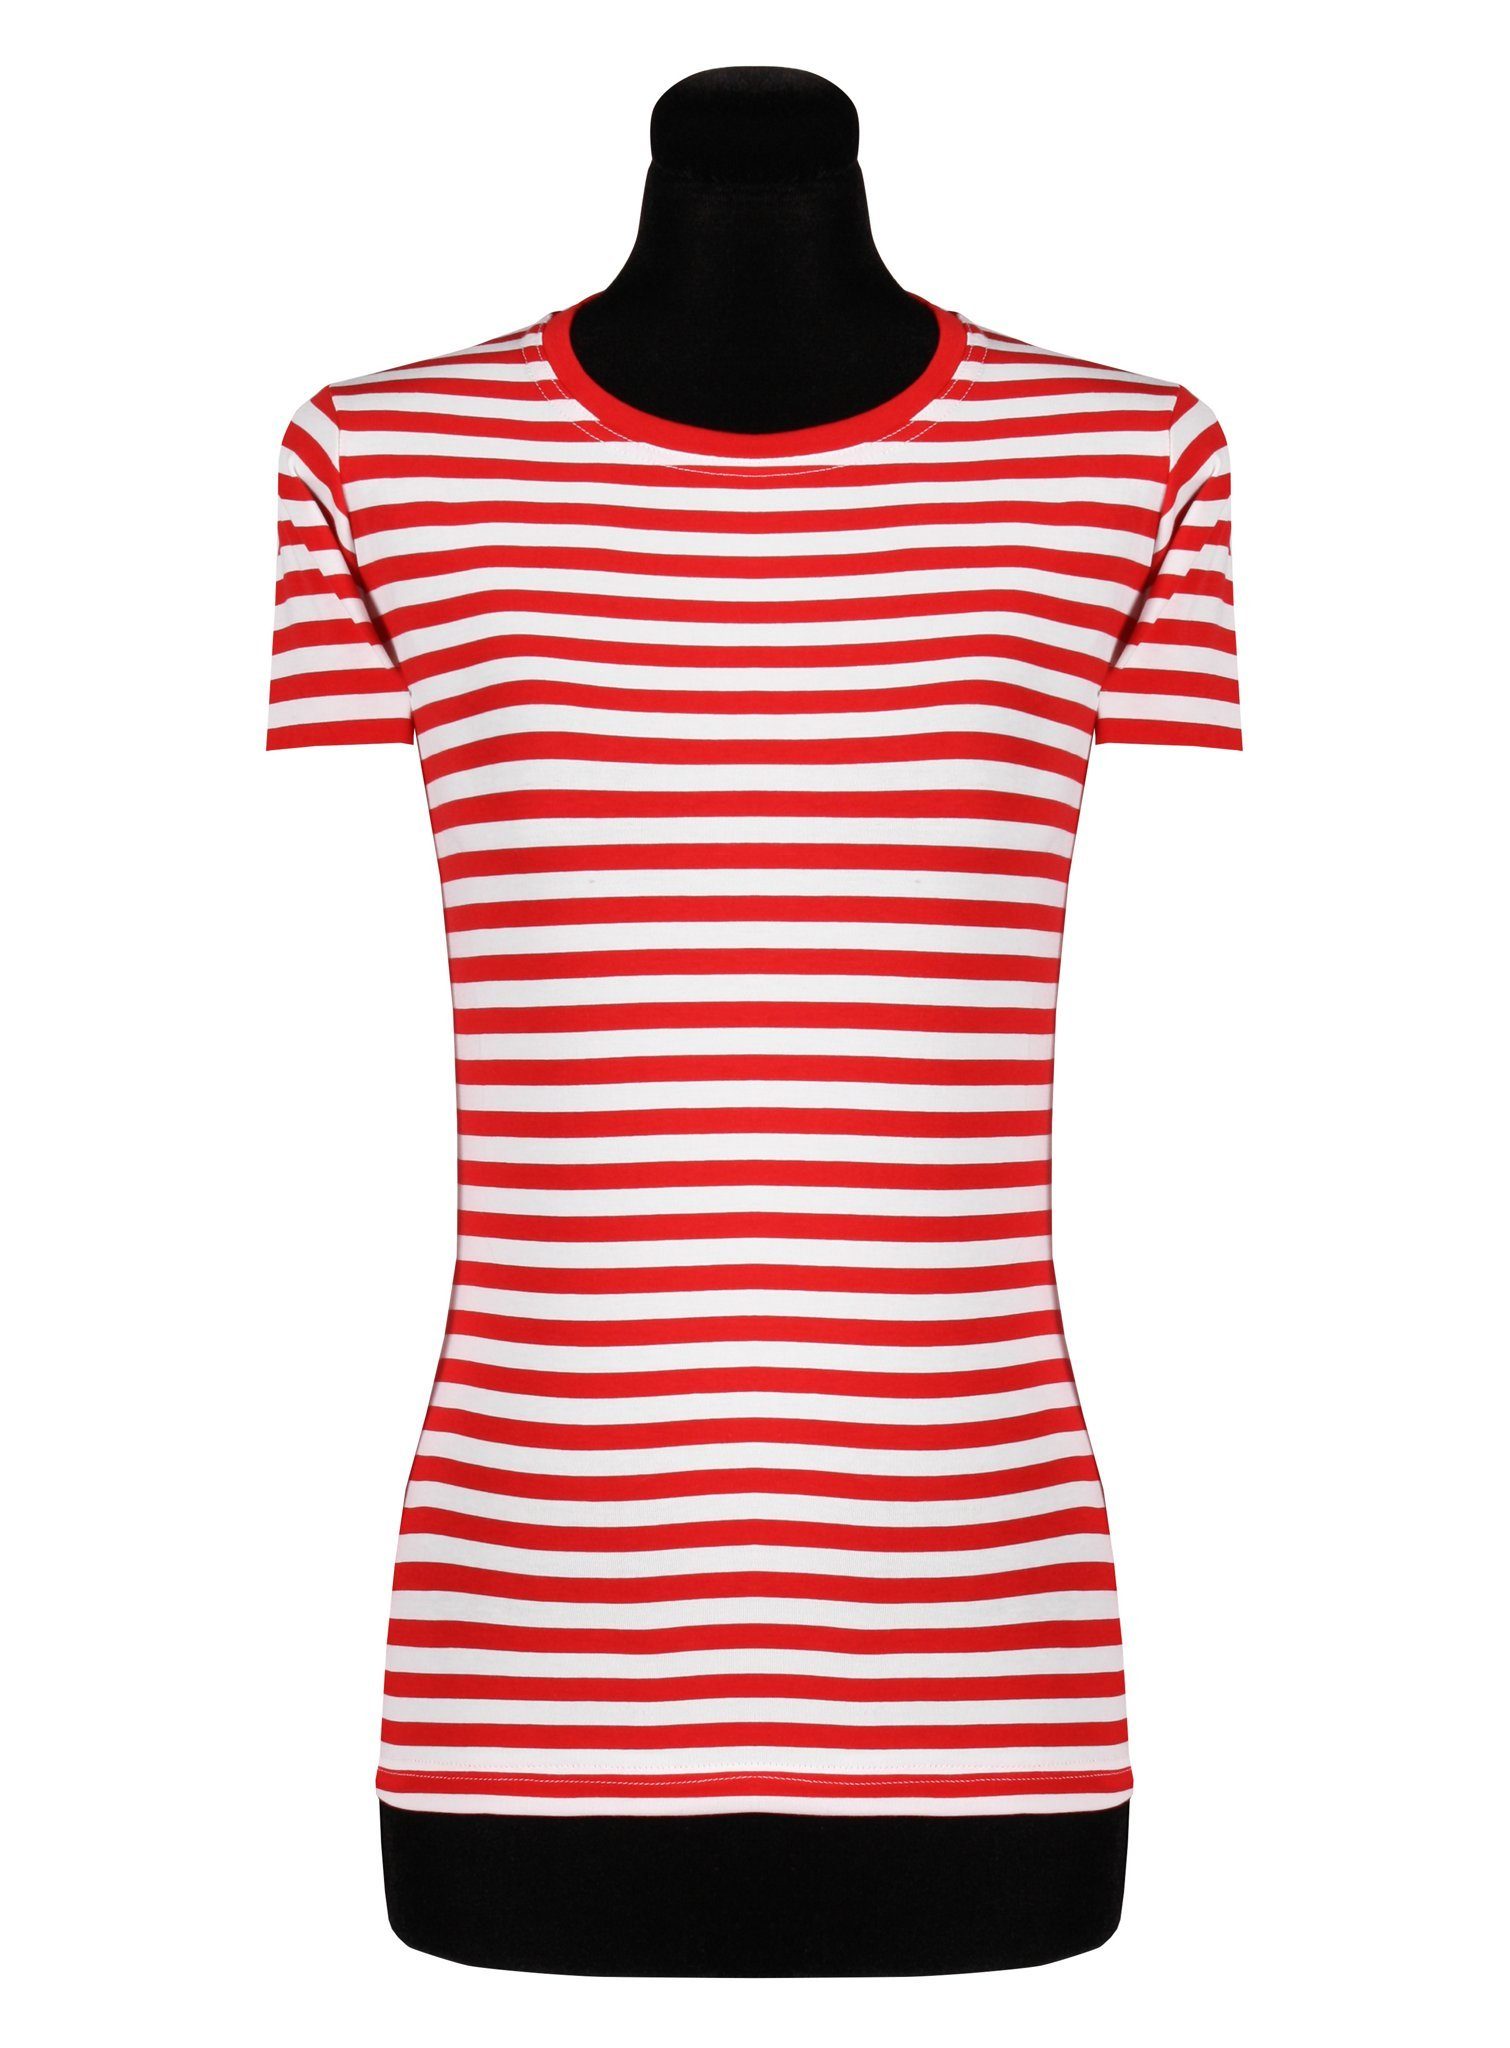 thetru T-Shirt Damen Ringelshirt kurzarm rot-weiß – alltagstaugli  Gestreiftes Shirt für Karneval und Alltag – qualitativ entsprechend